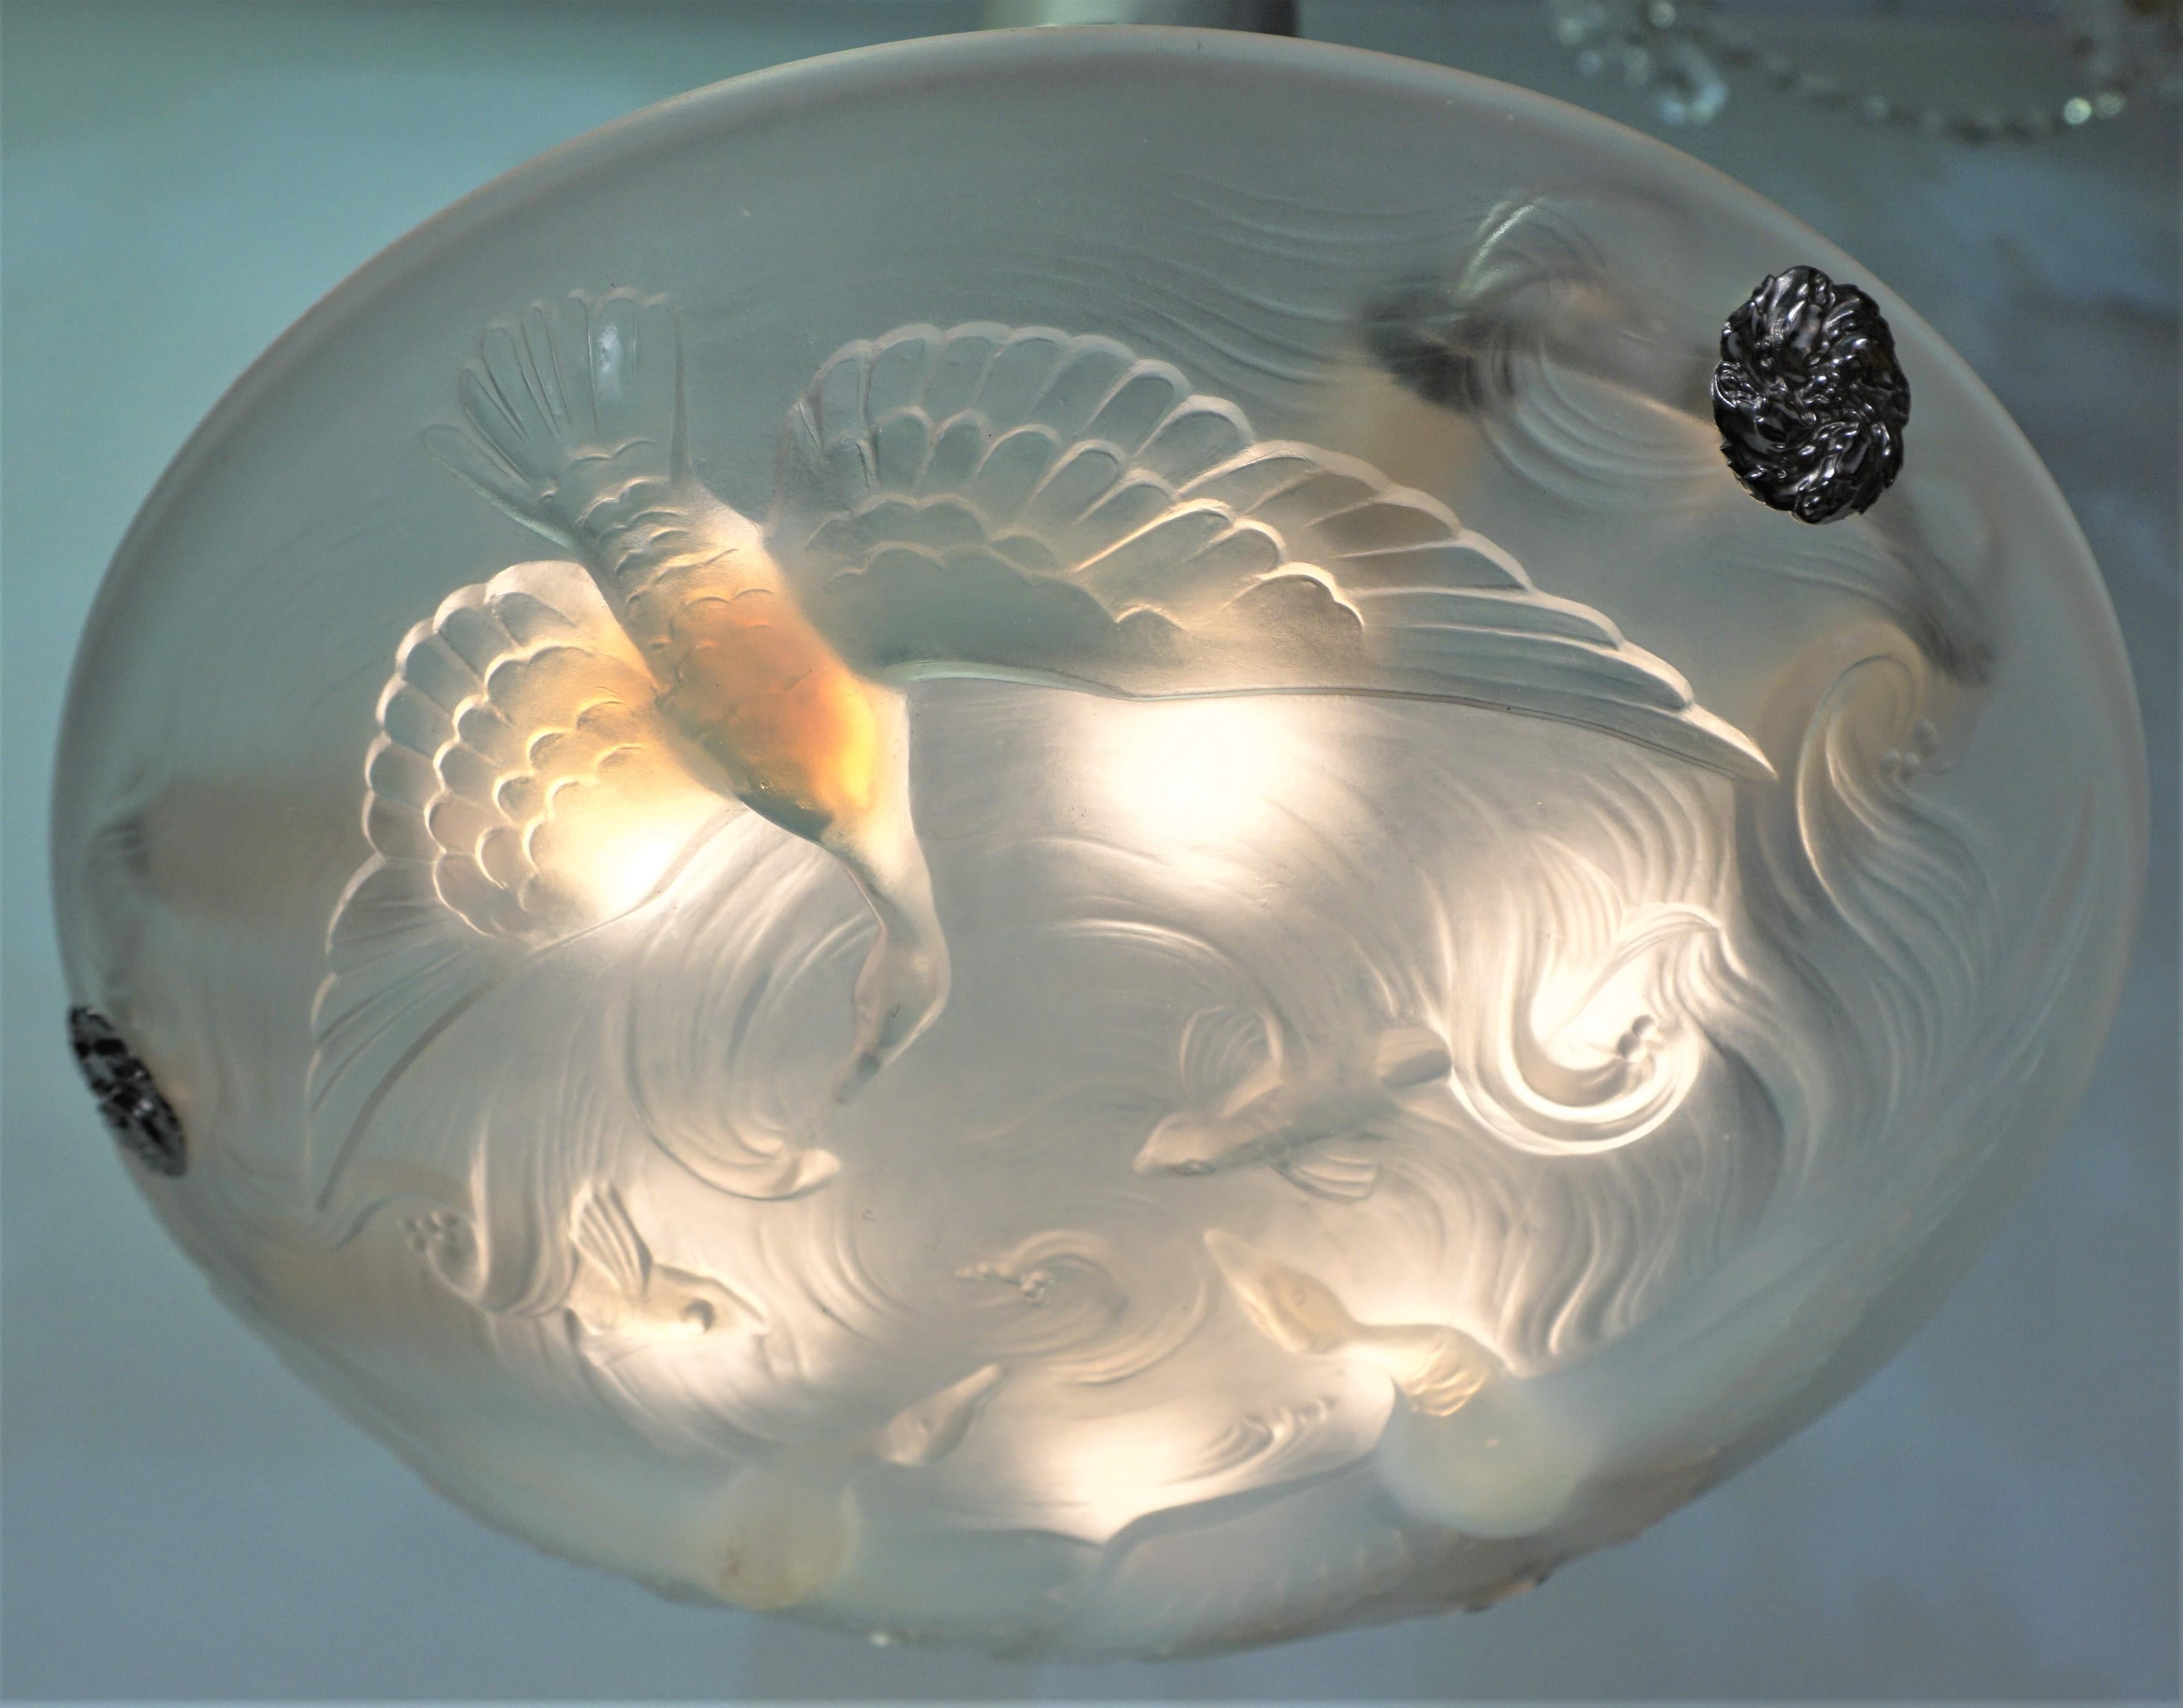 Magnifique lustre Art Déco en verre opalescent avec quincaillerie en nickel sur bronze.
Six lampes de 60 watts maximum chacune.